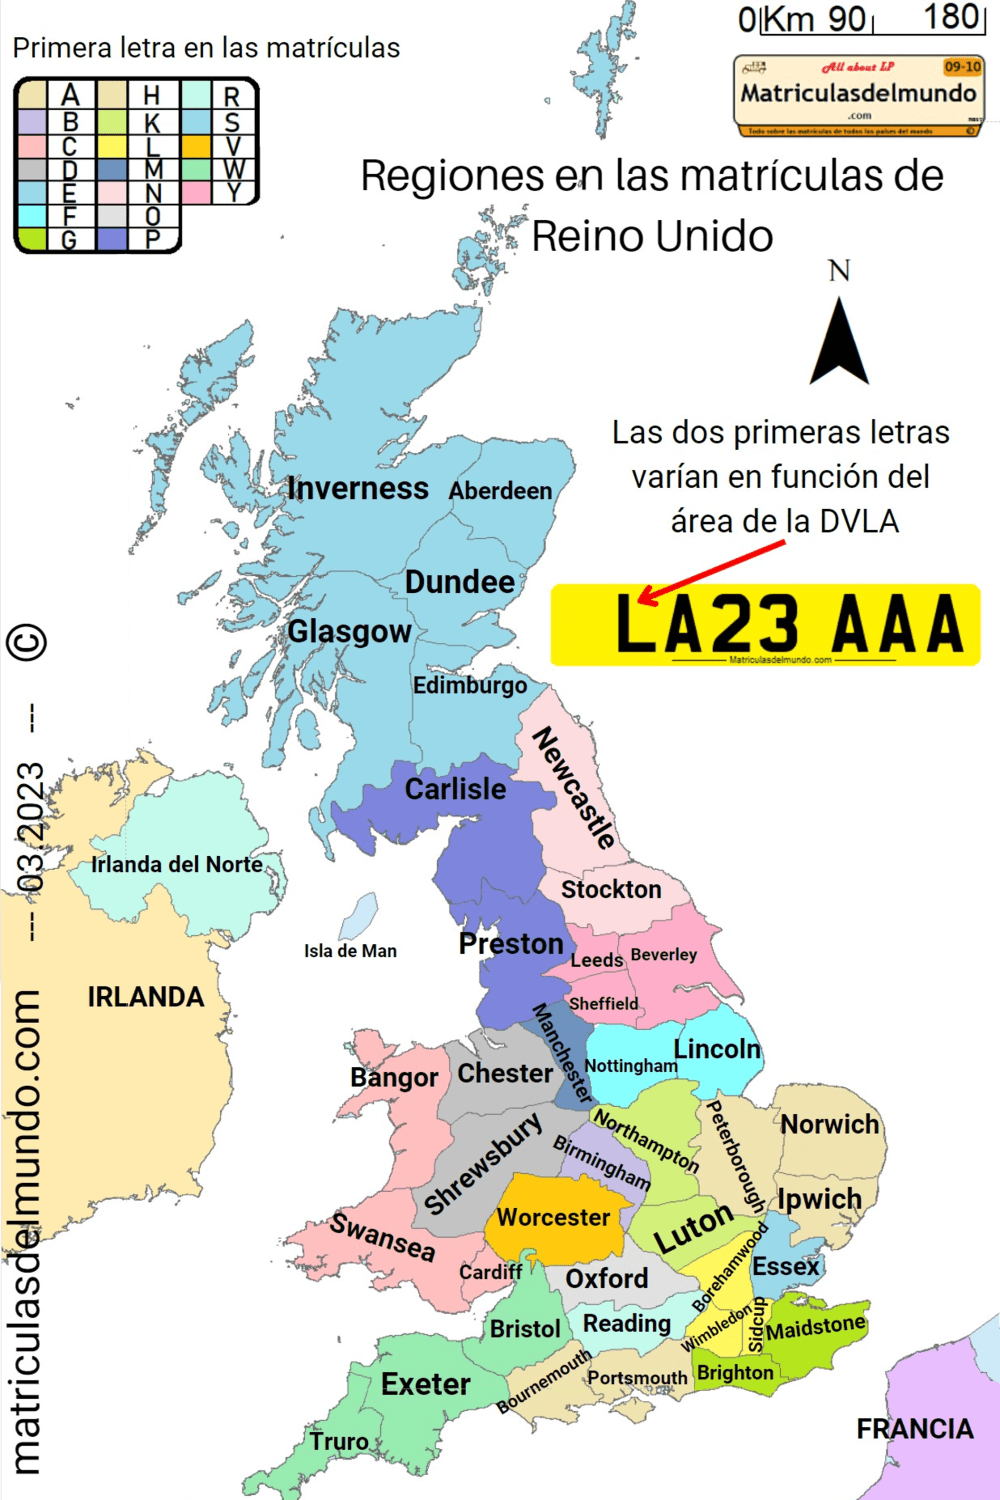 Mapa de las matrículas de Reino Unido y el DVLA por ciudades